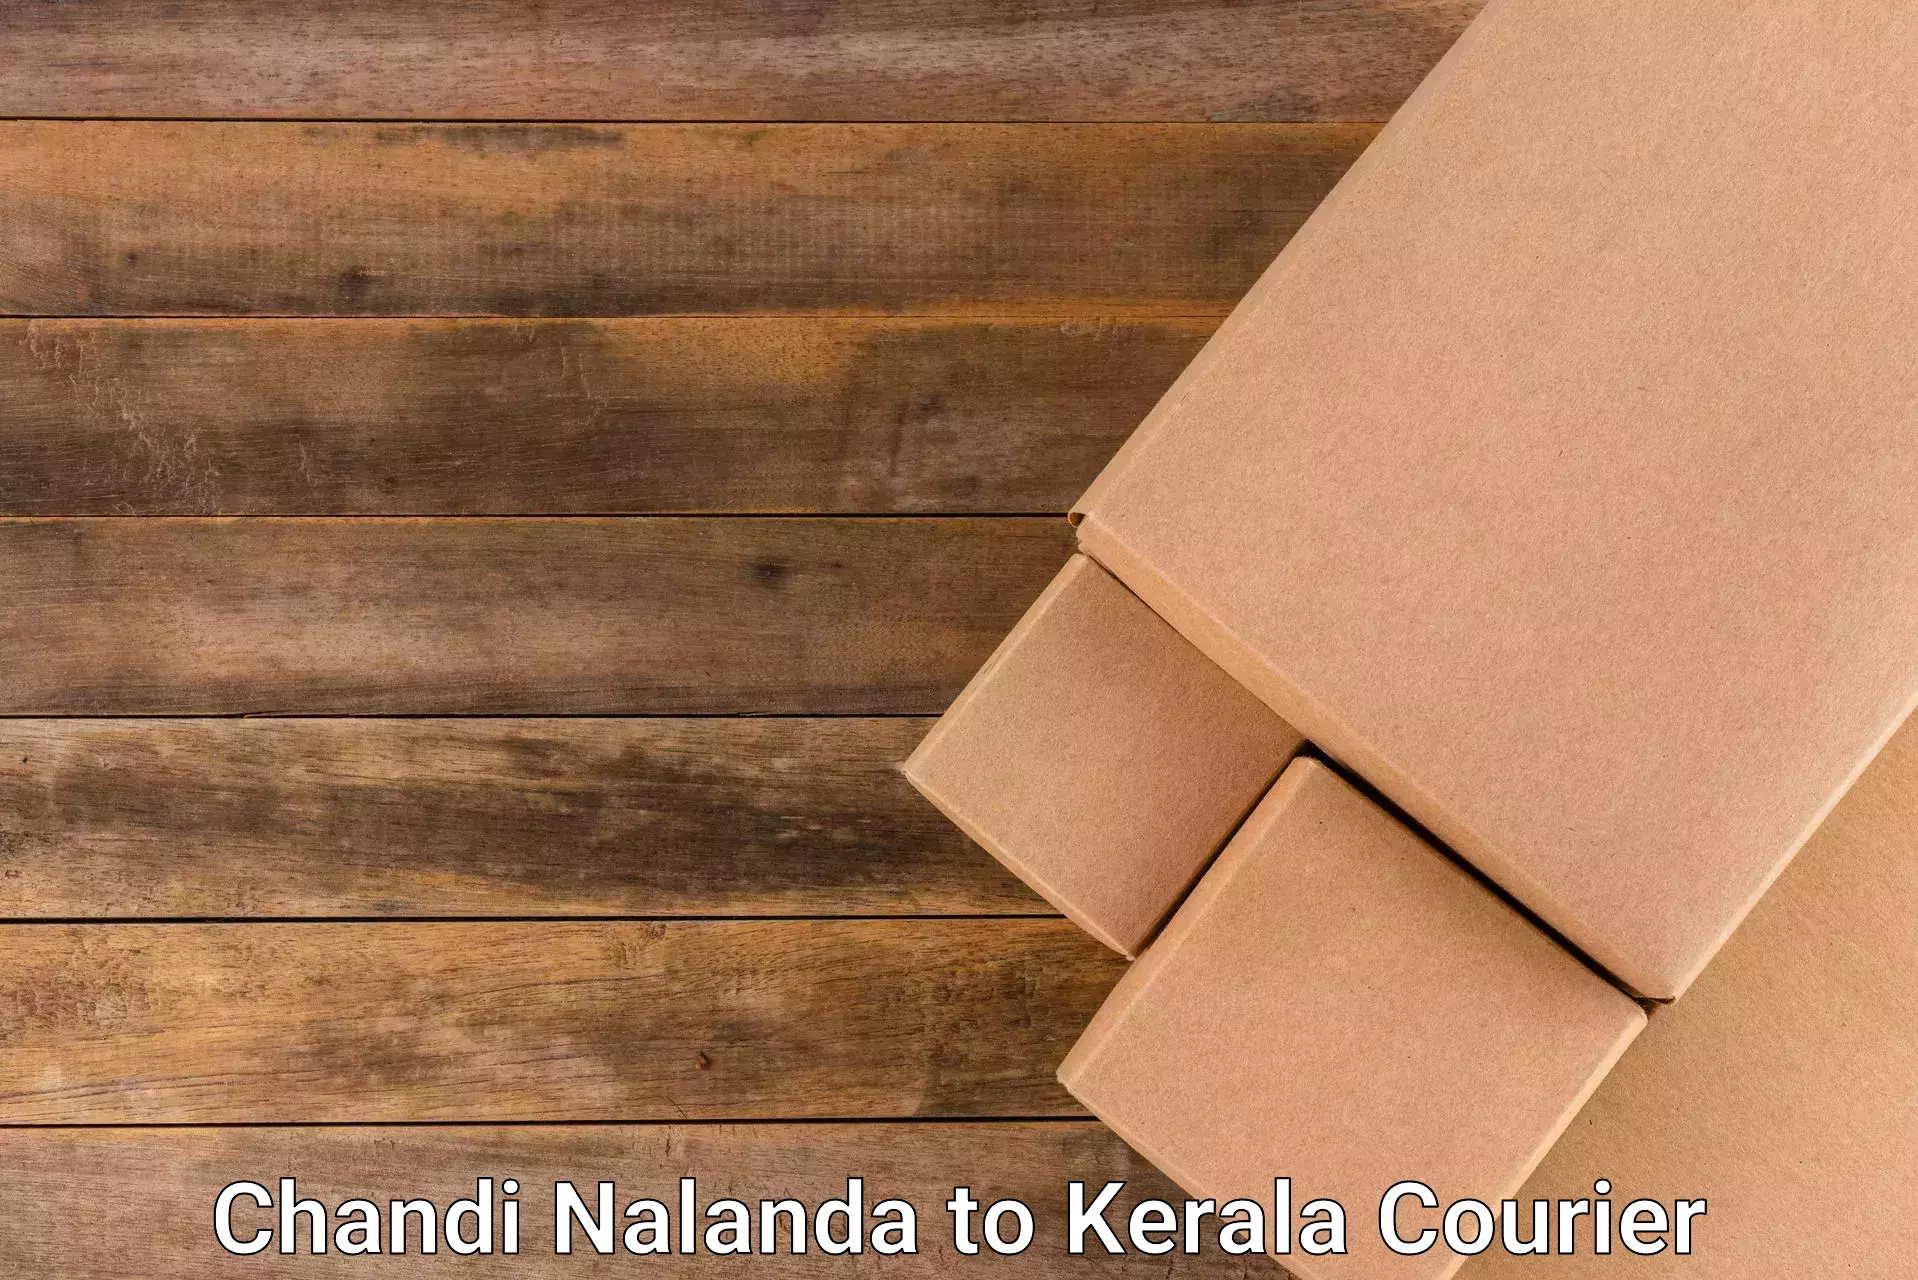 Efficient courier operations Chandi Nalanda to Thiruvananthapuram